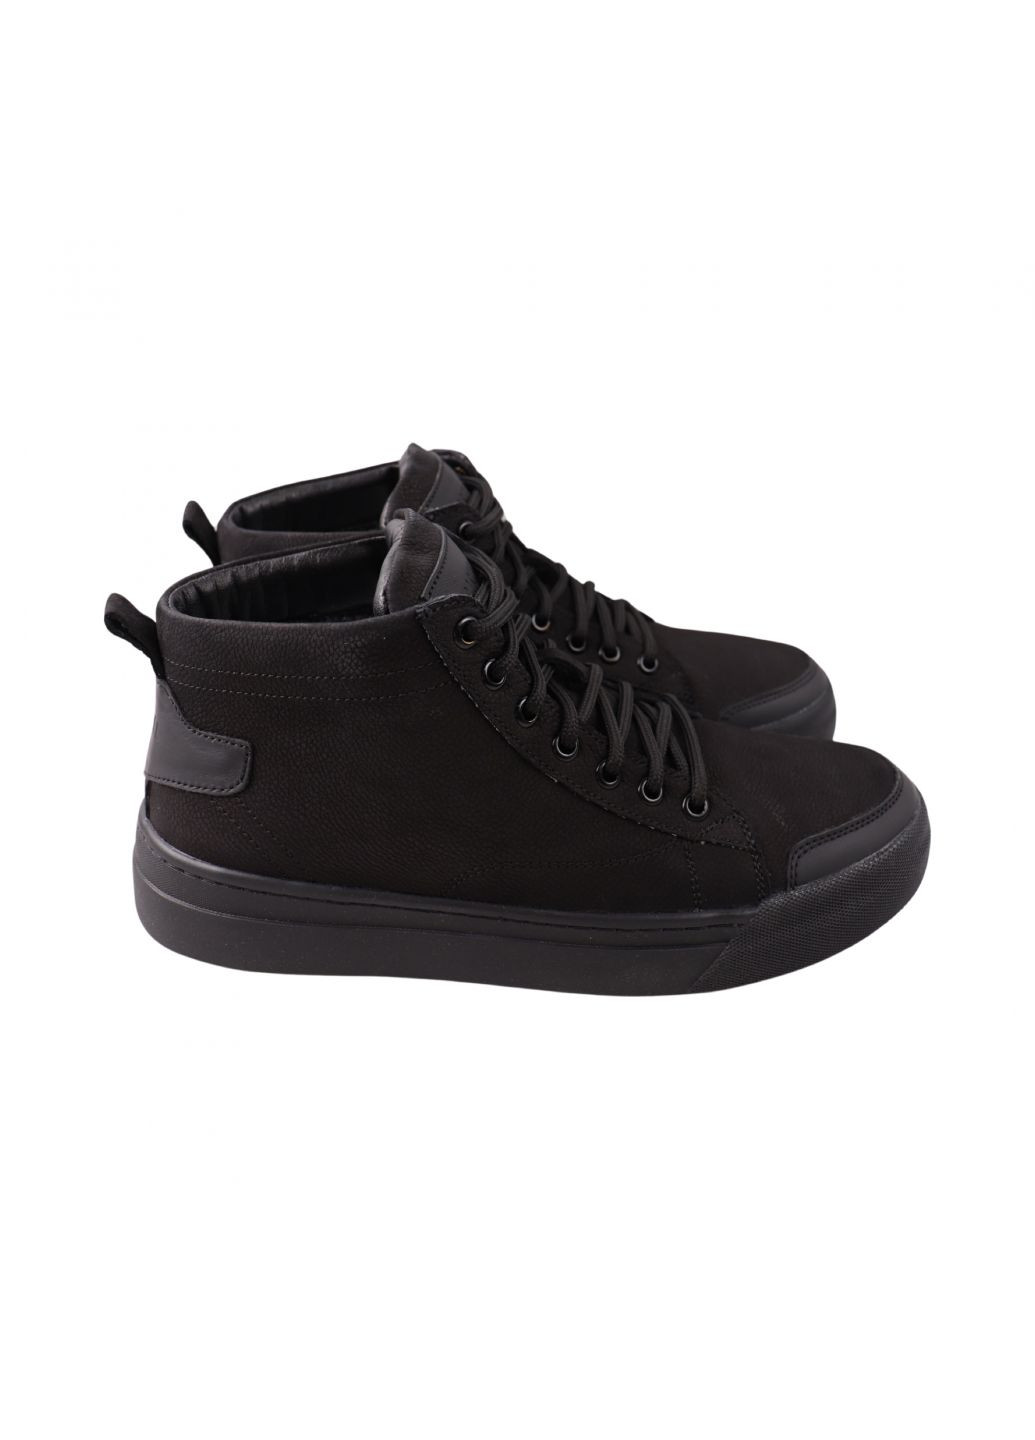 Черные ботинки мужские черные натуральный нубук Rondo